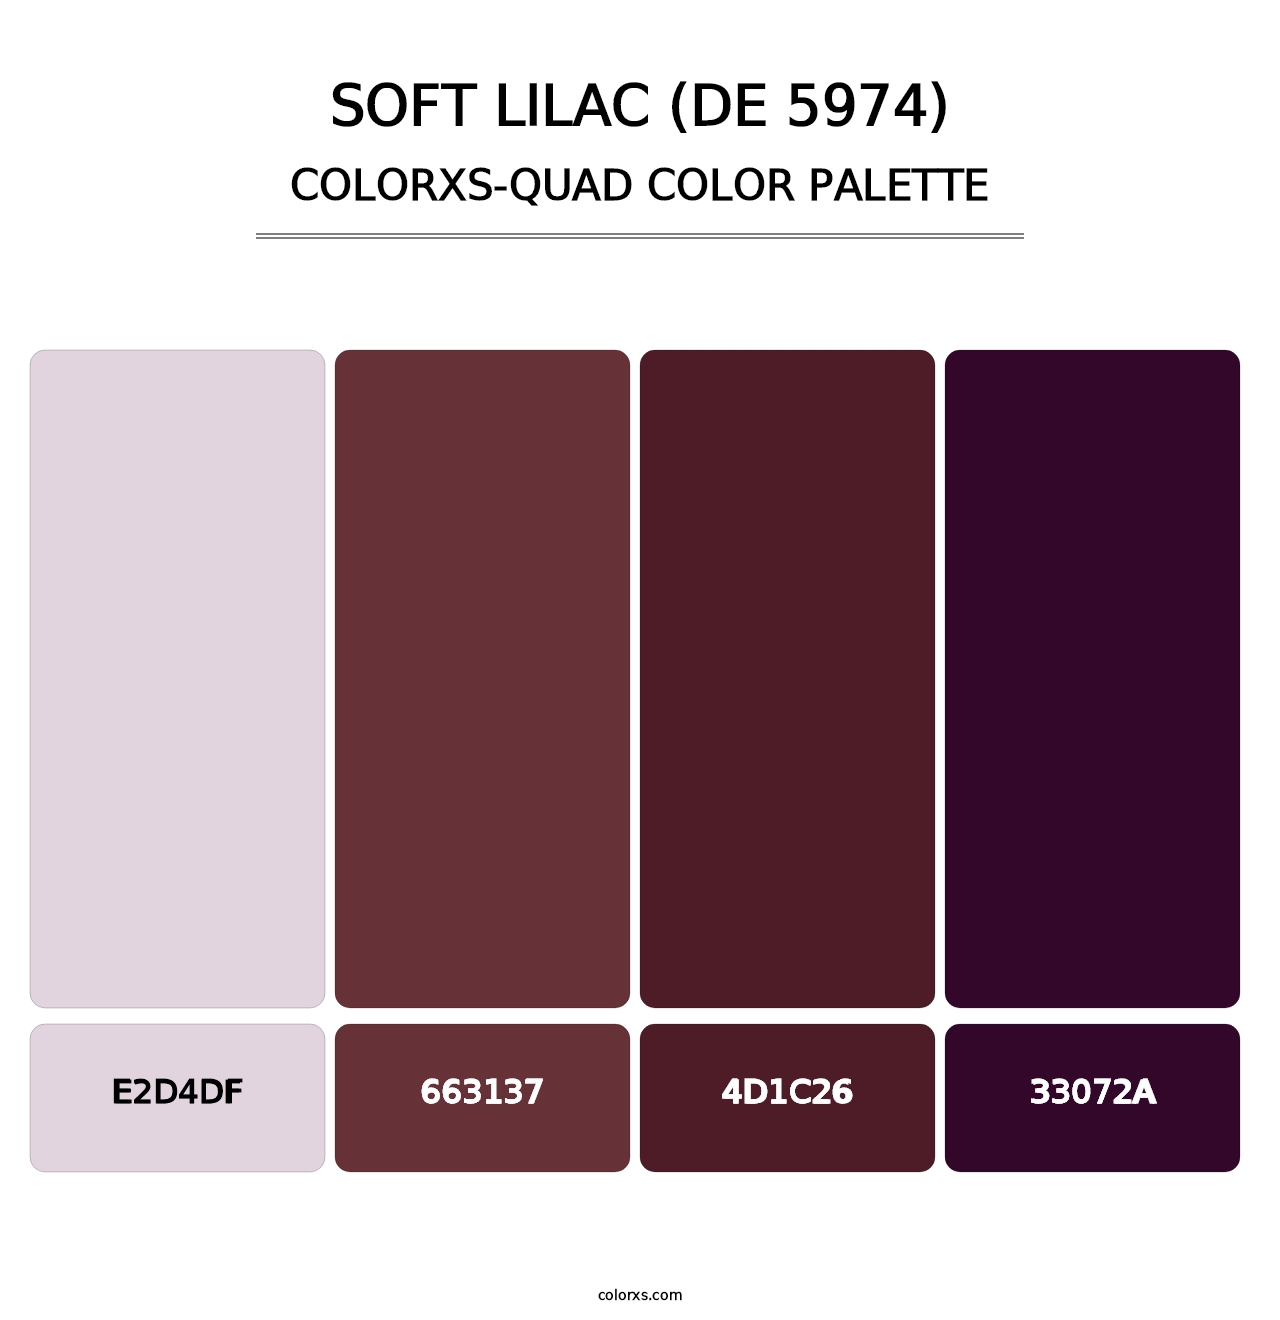 Soft Lilac (DE 5974) - Colorxs Quad Palette